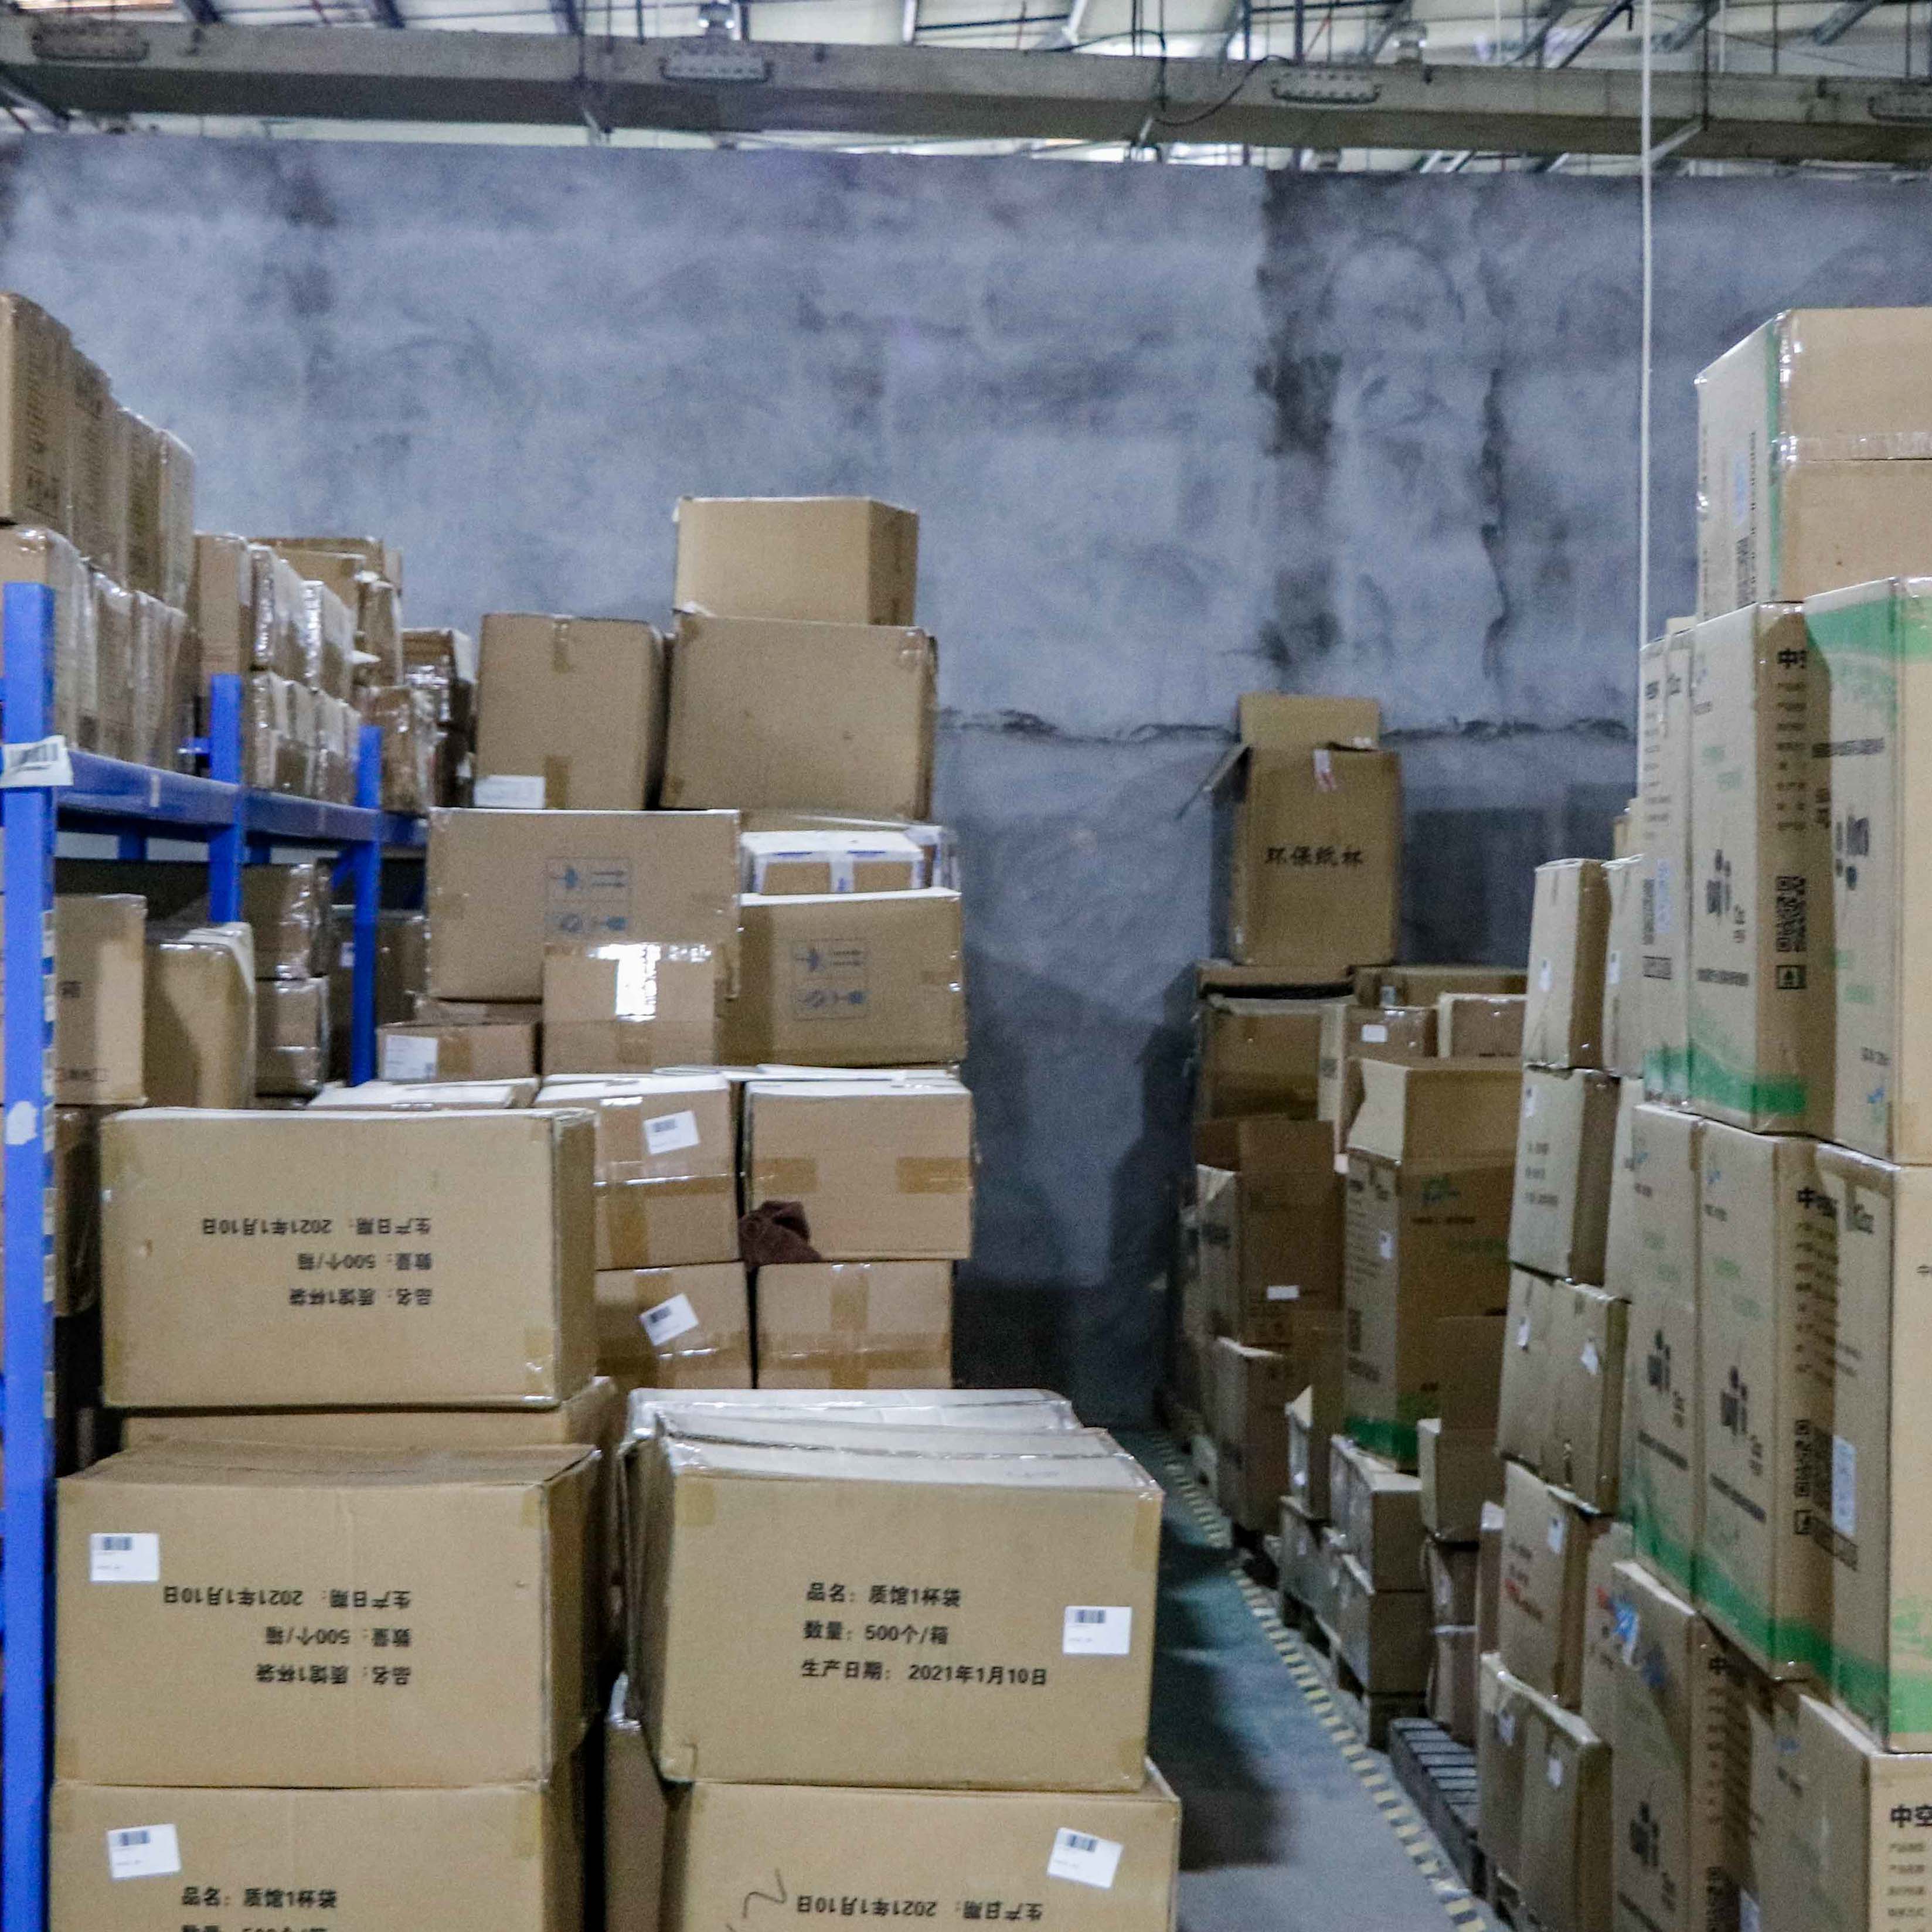 上海星力仓储服务有限公司以仓库代发货服务为主,提供市内配送及国内